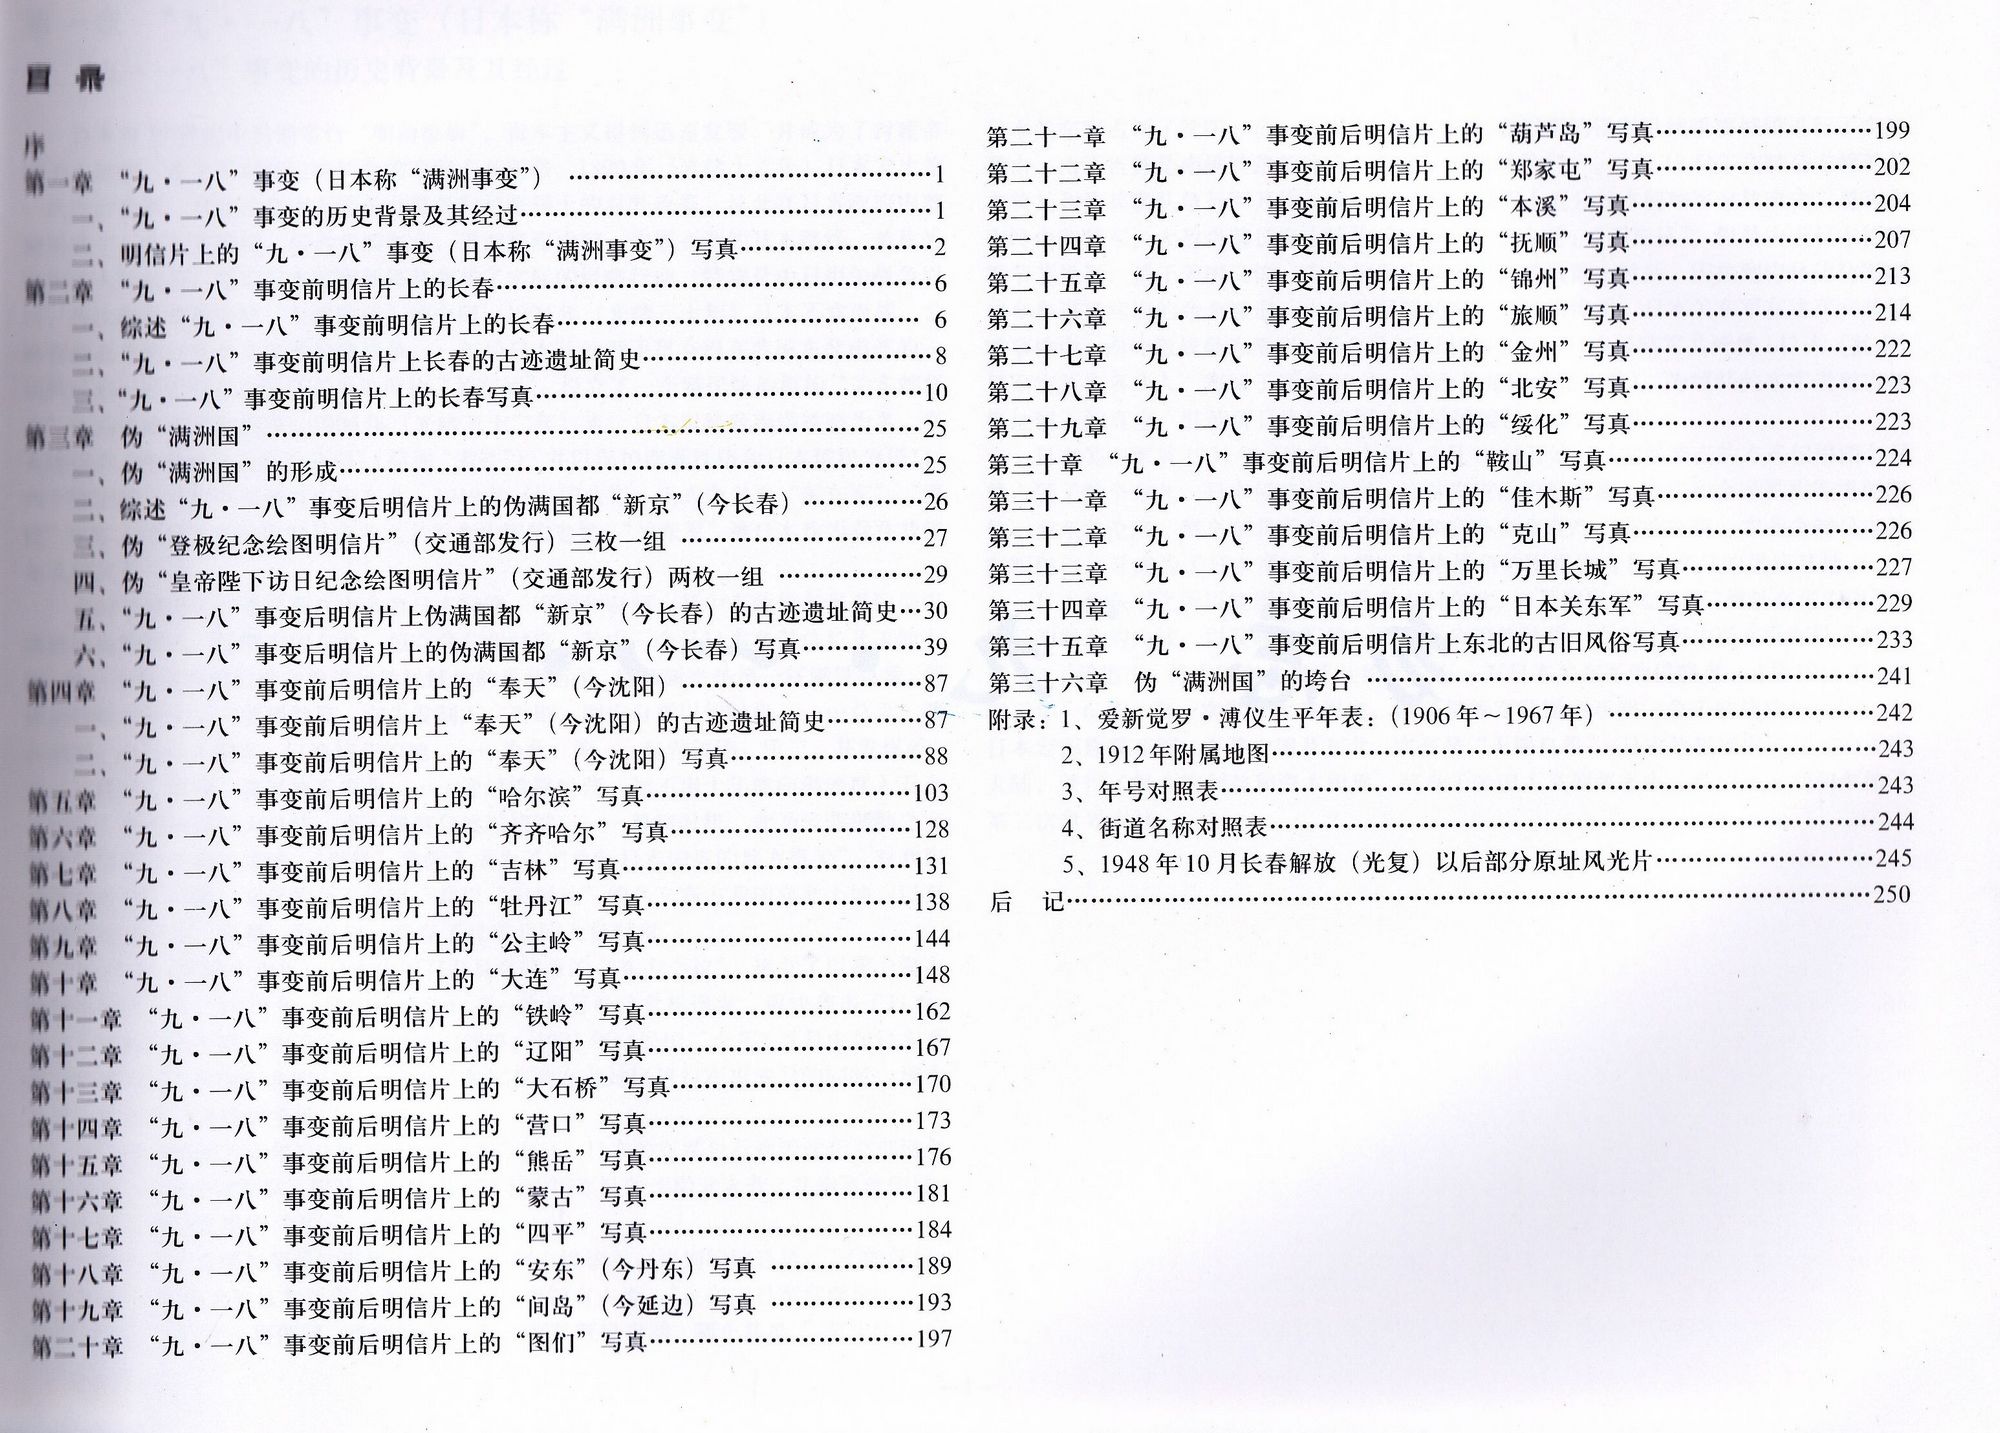 F2249, Study on Manchukuo Post Cards, China 2005